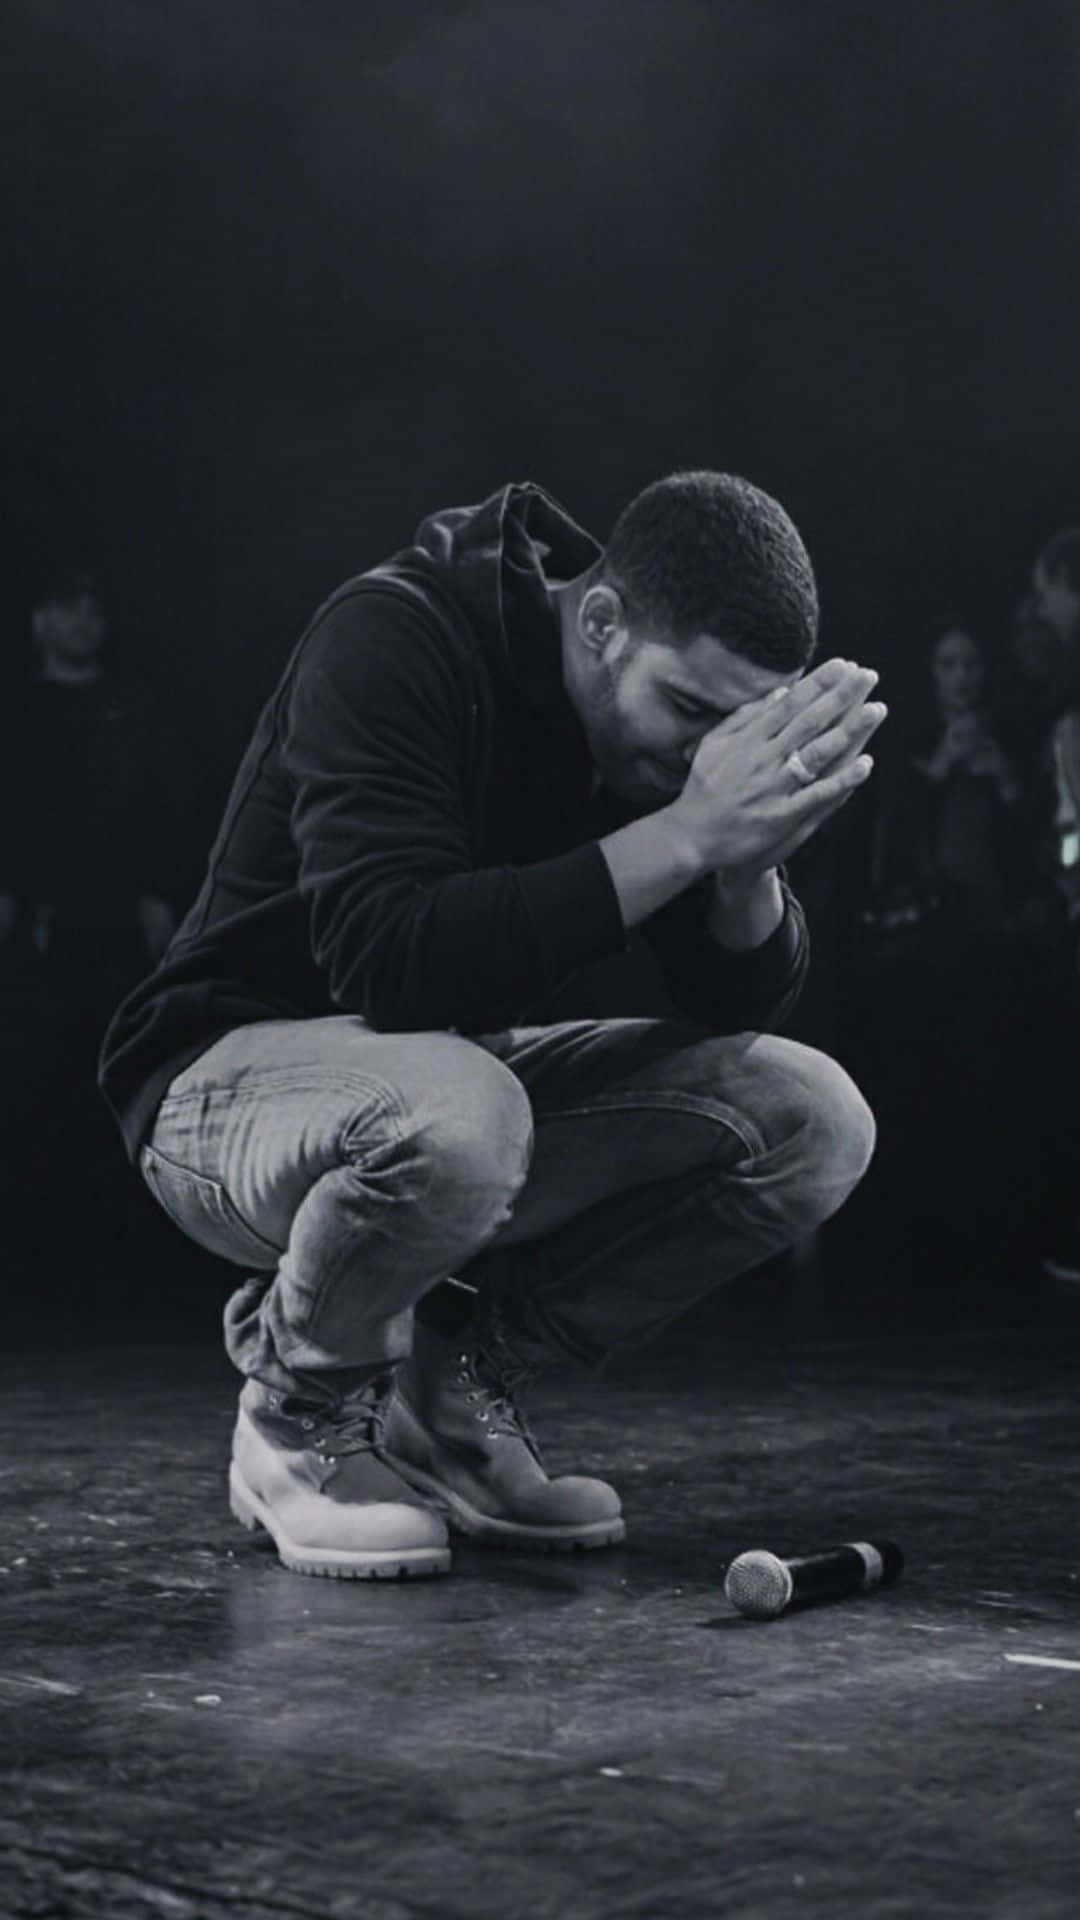 Føl den passion i lyrics af den canadiske rapper Drake. Wallpaper